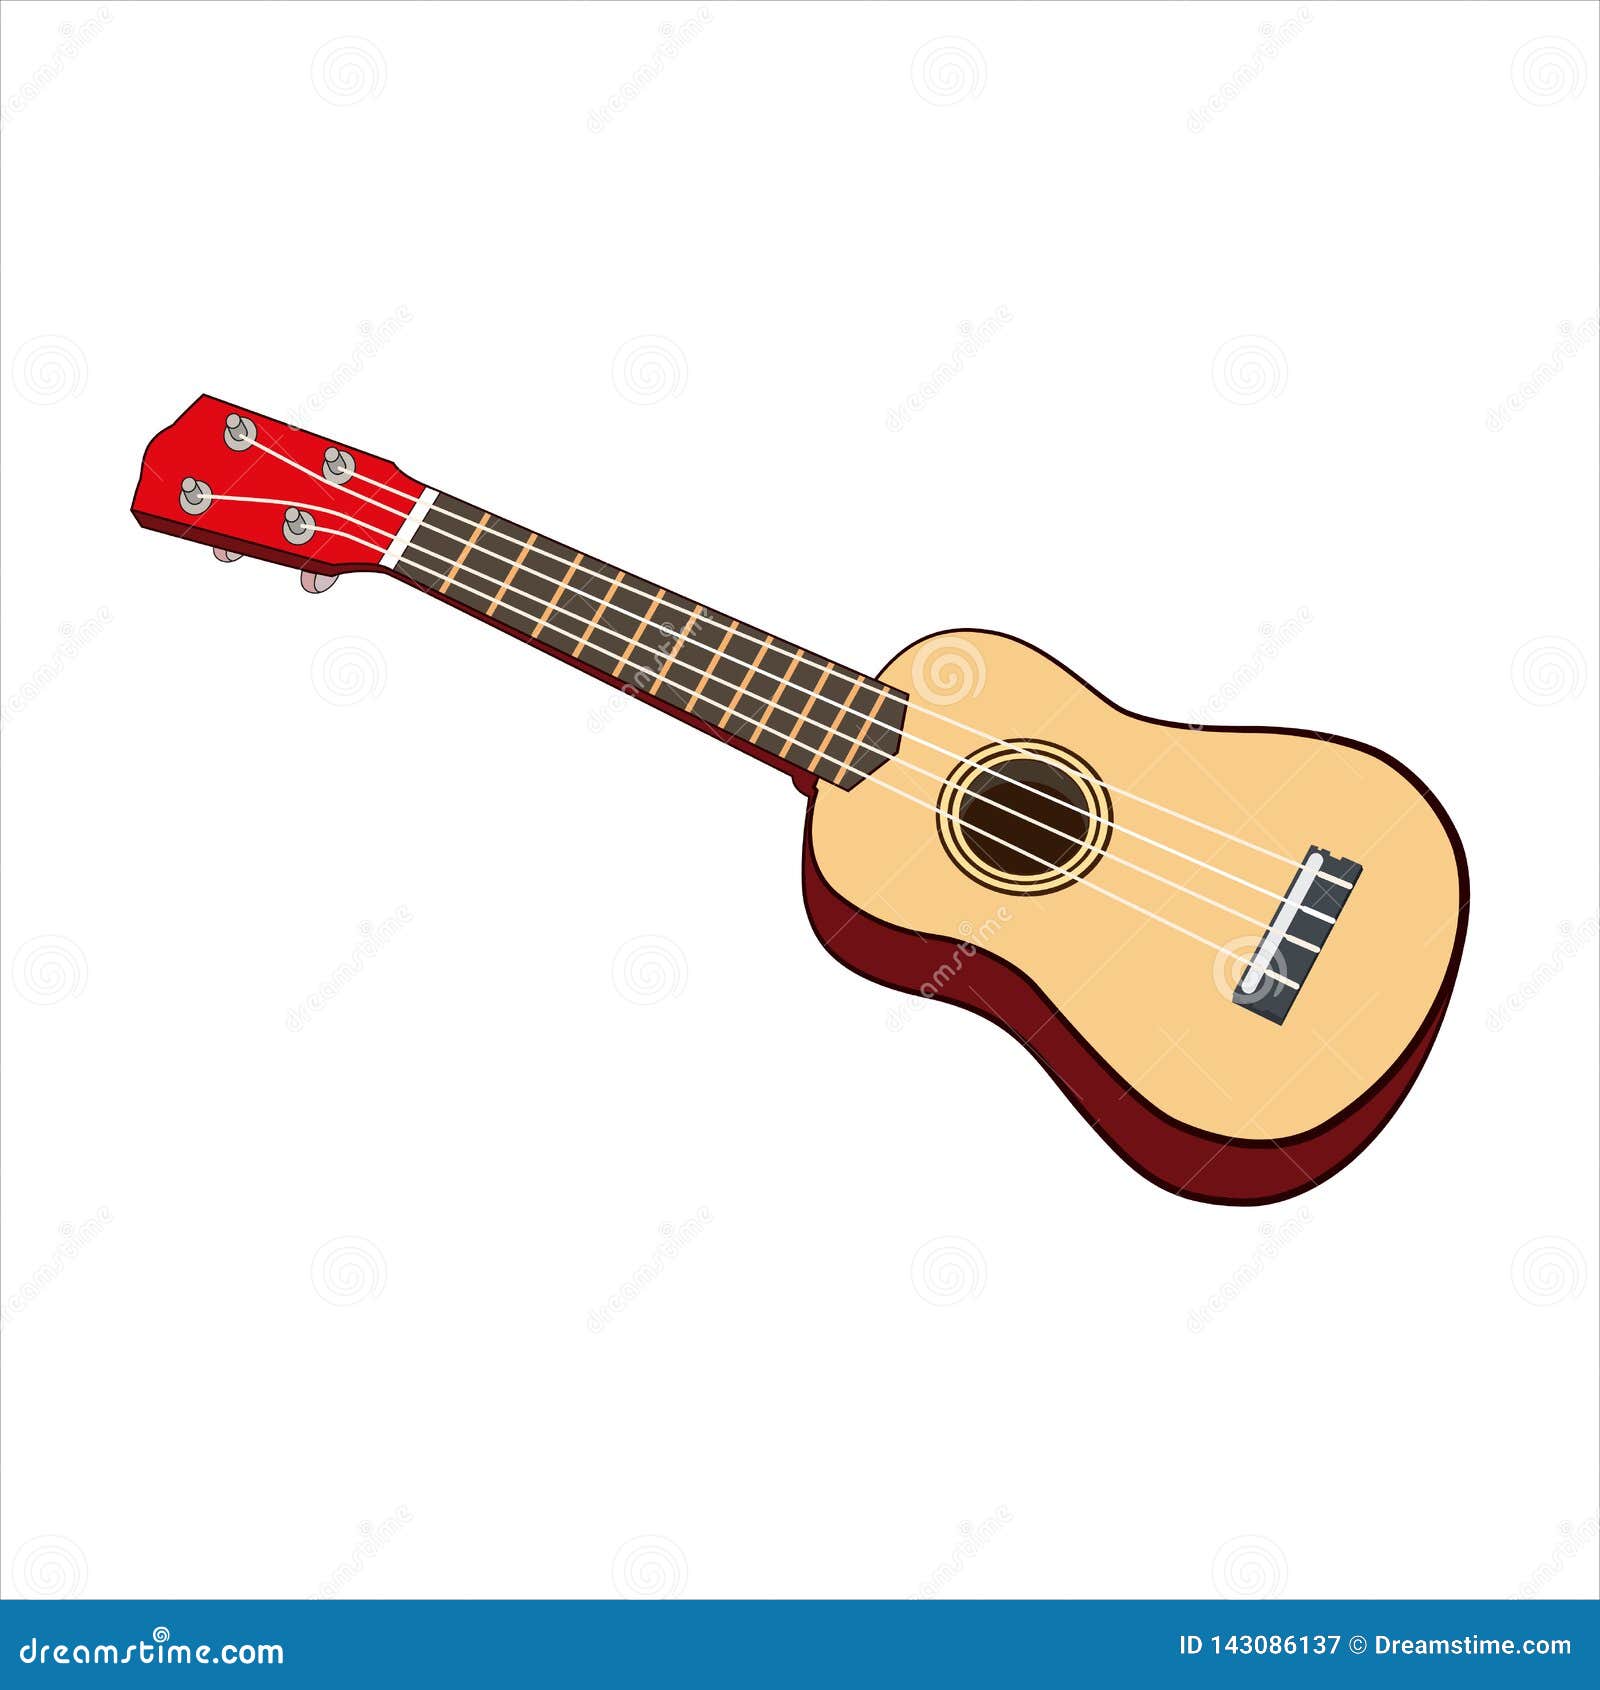 instrumento musical de ukelele con bolsa de transporte Ukelele transparente pequeña guitarra de 23 pulgadas hermoso ukelele transparente para regalos